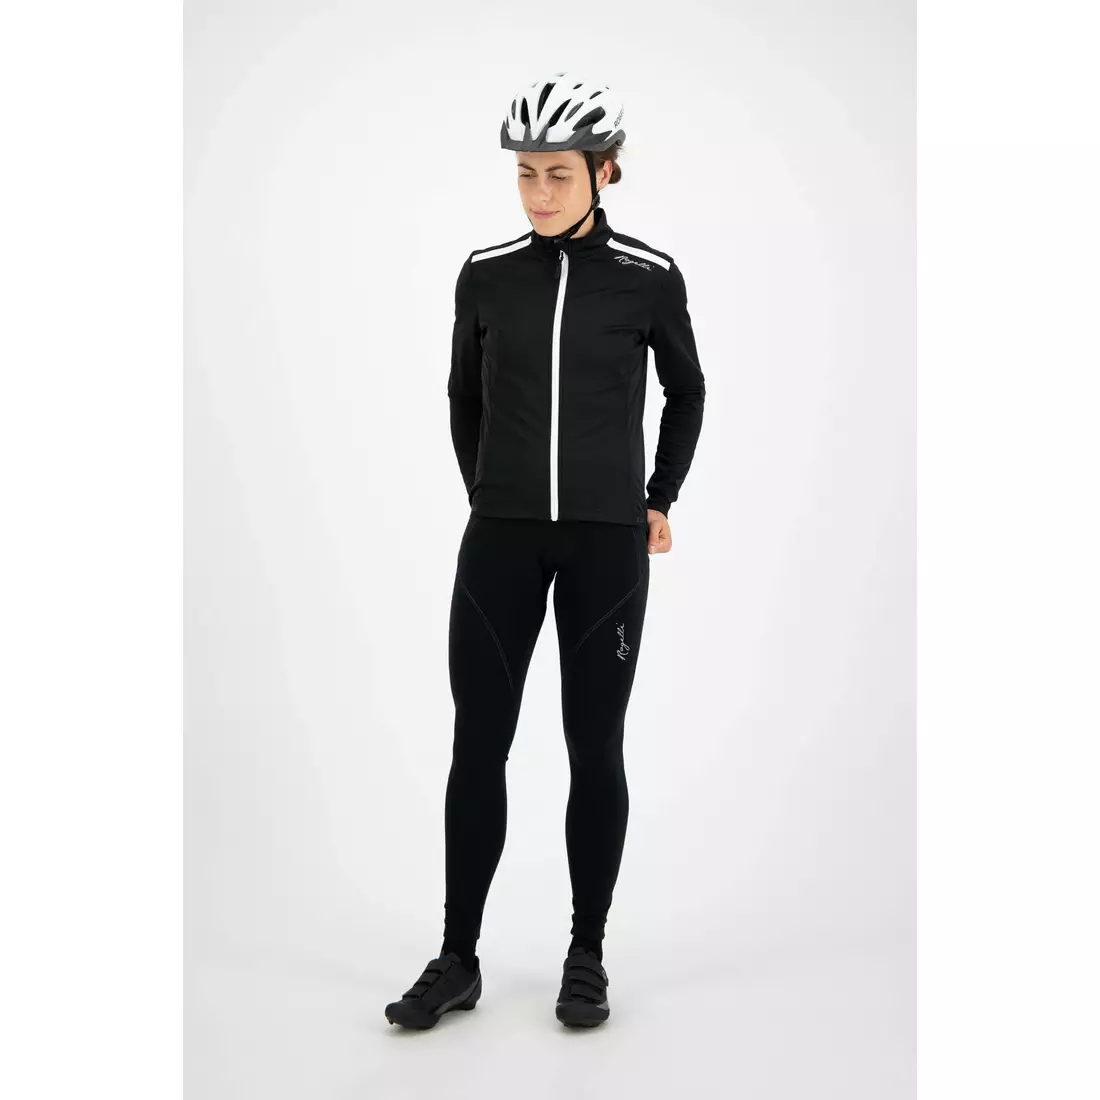 ROGELLI PESARA jachetă de ciclism de iarnă pentru femei, negru și alb